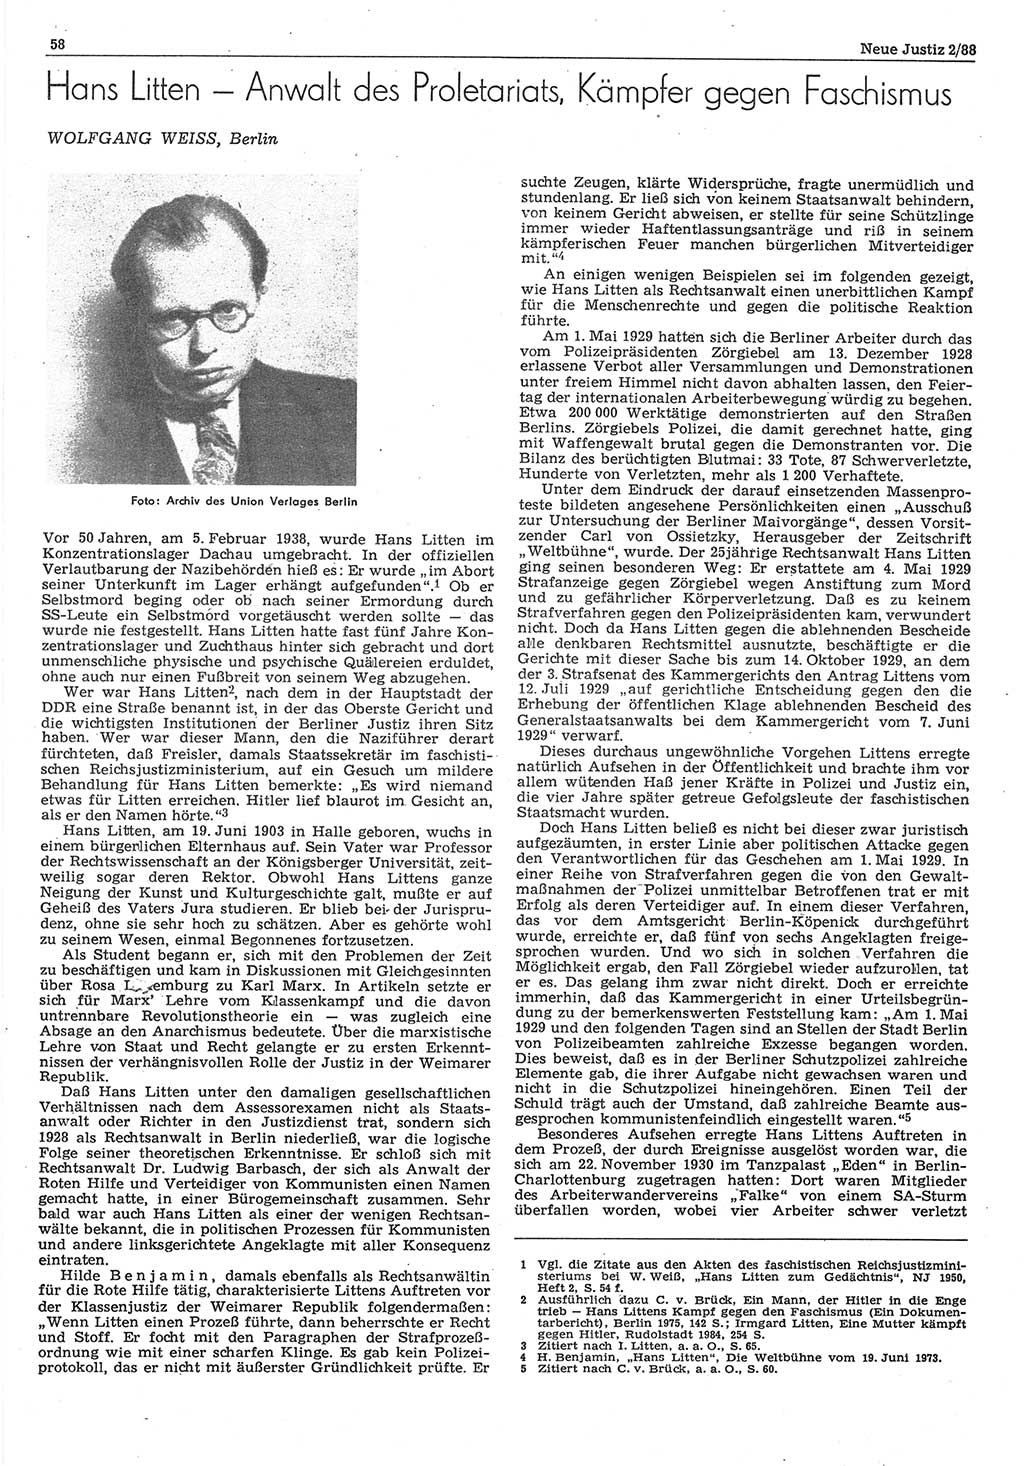 Neue Justiz (NJ), Zeitschrift für sozialistisches Recht und Gesetzlichkeit [Deutsche Demokratische Republik (DDR)], 42. Jahrgang 1988, Seite 58 (NJ DDR 1988, S. 58)